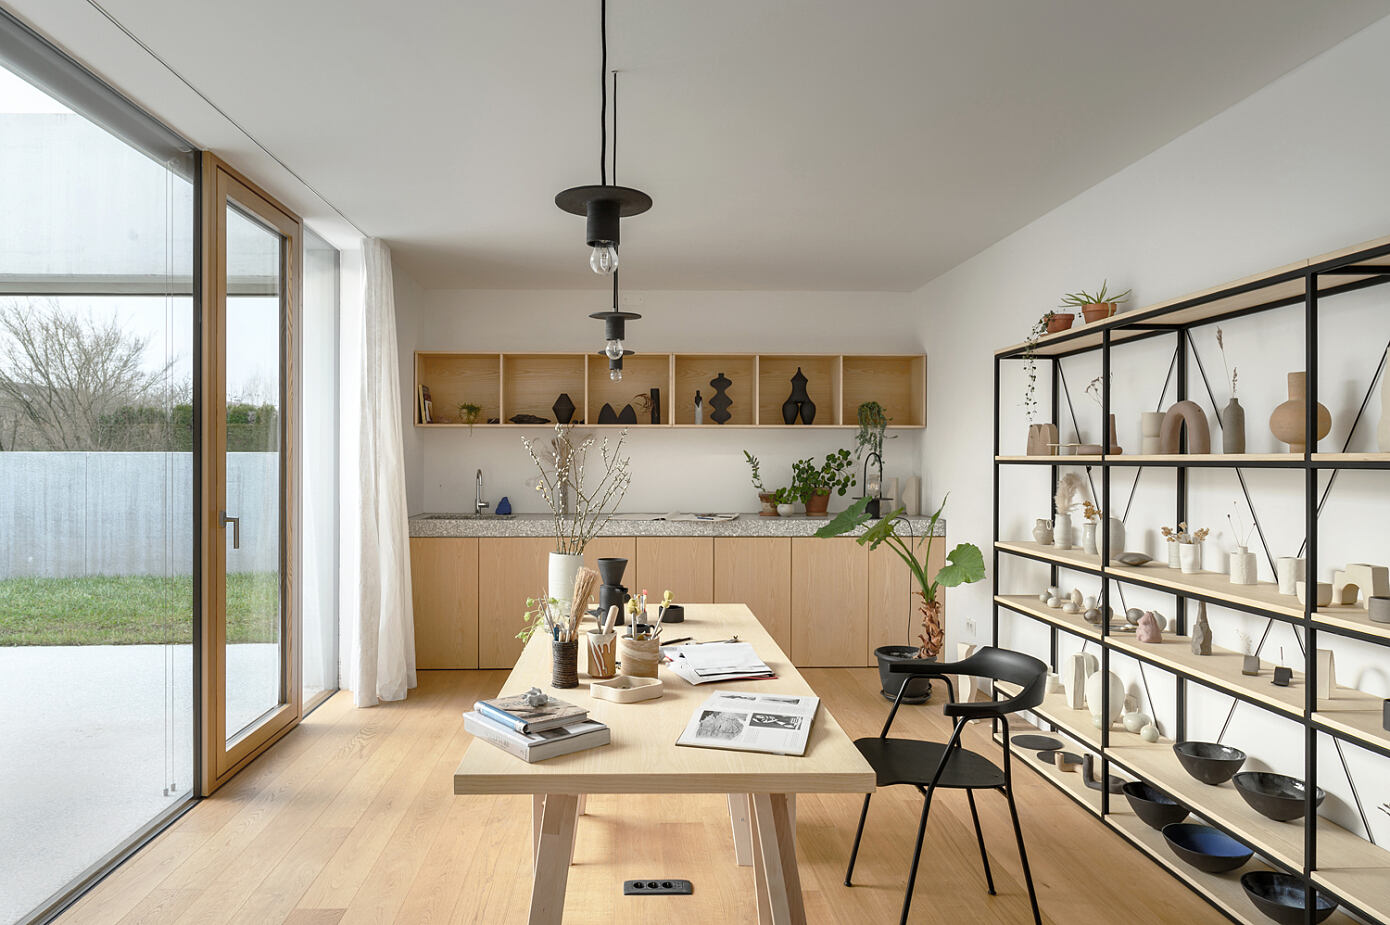 House for a Ceramic Designer by Arhitektura d.o.o.